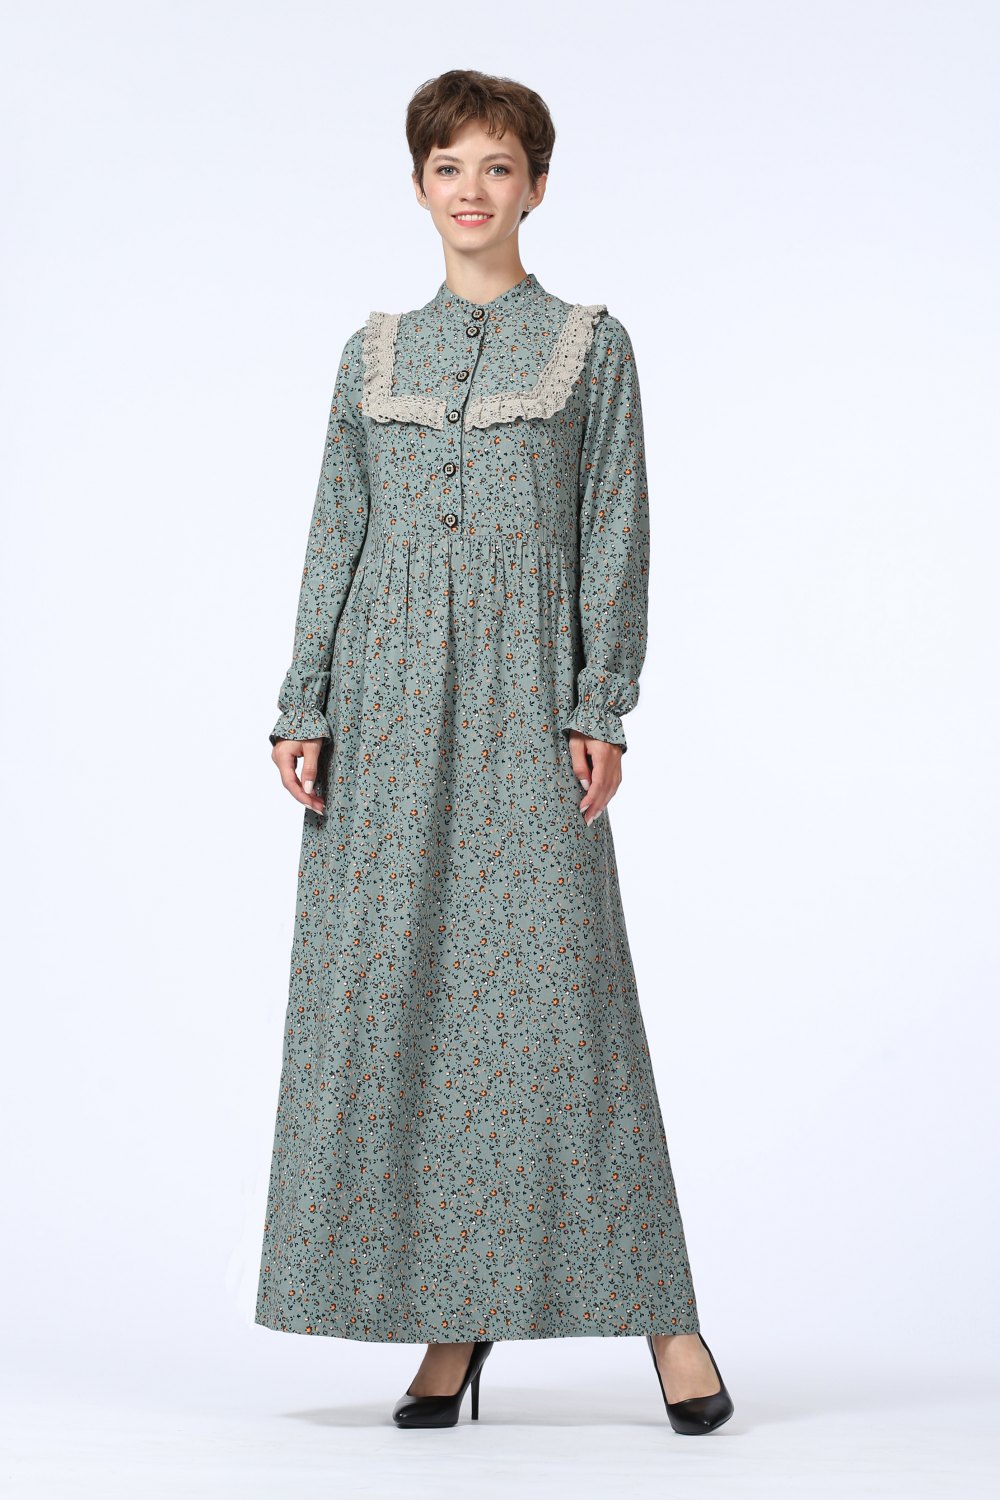 Платье женское "Дарья" длинная модель 675/3 цвет: серо-голубые цветочки